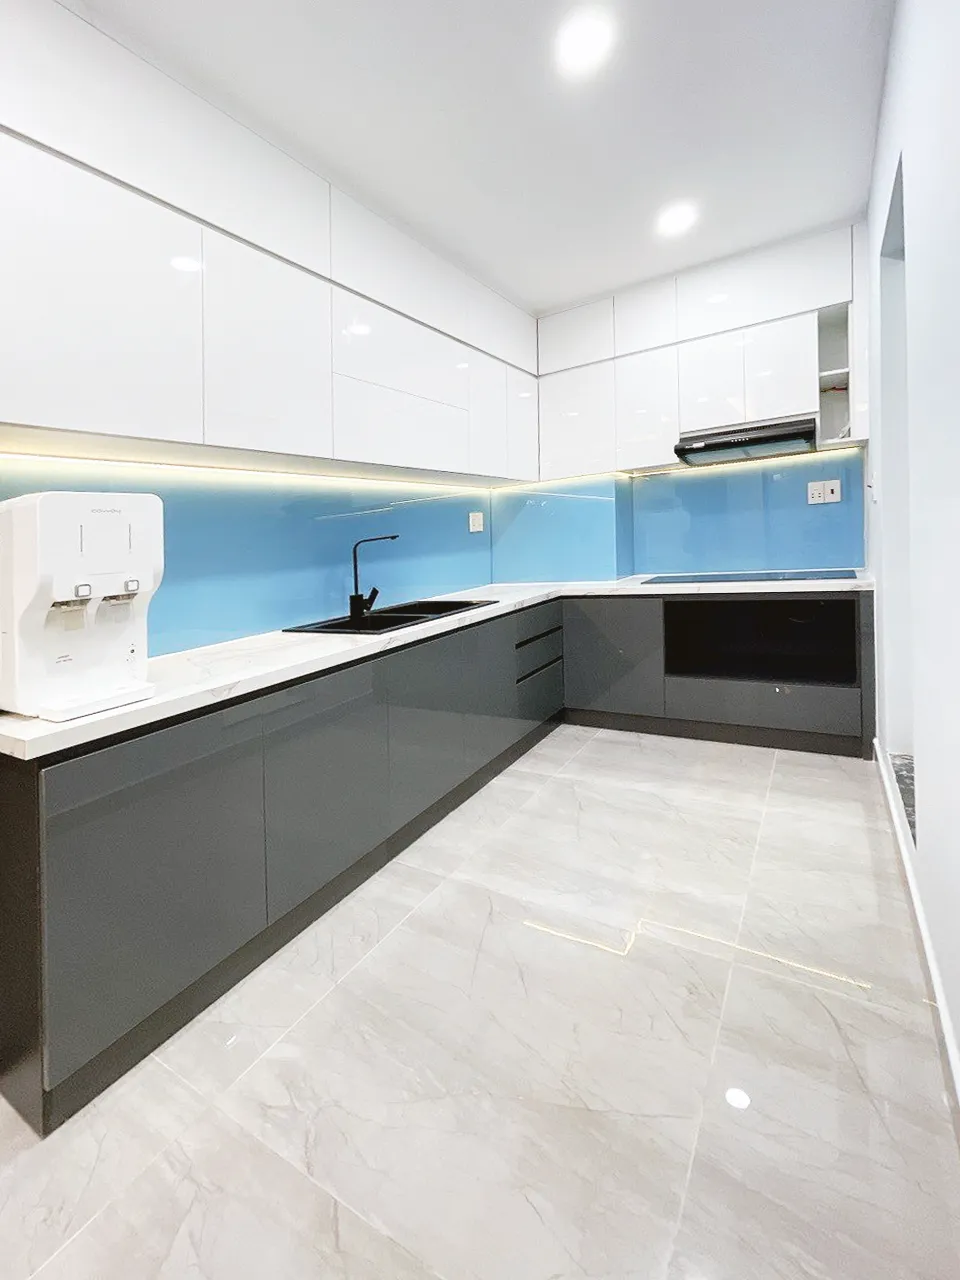 Hoàn thiện nội thất nhà bếp Căn hộ chung cư H2 Hoàng Diệu phong cách Hiện đại Modern